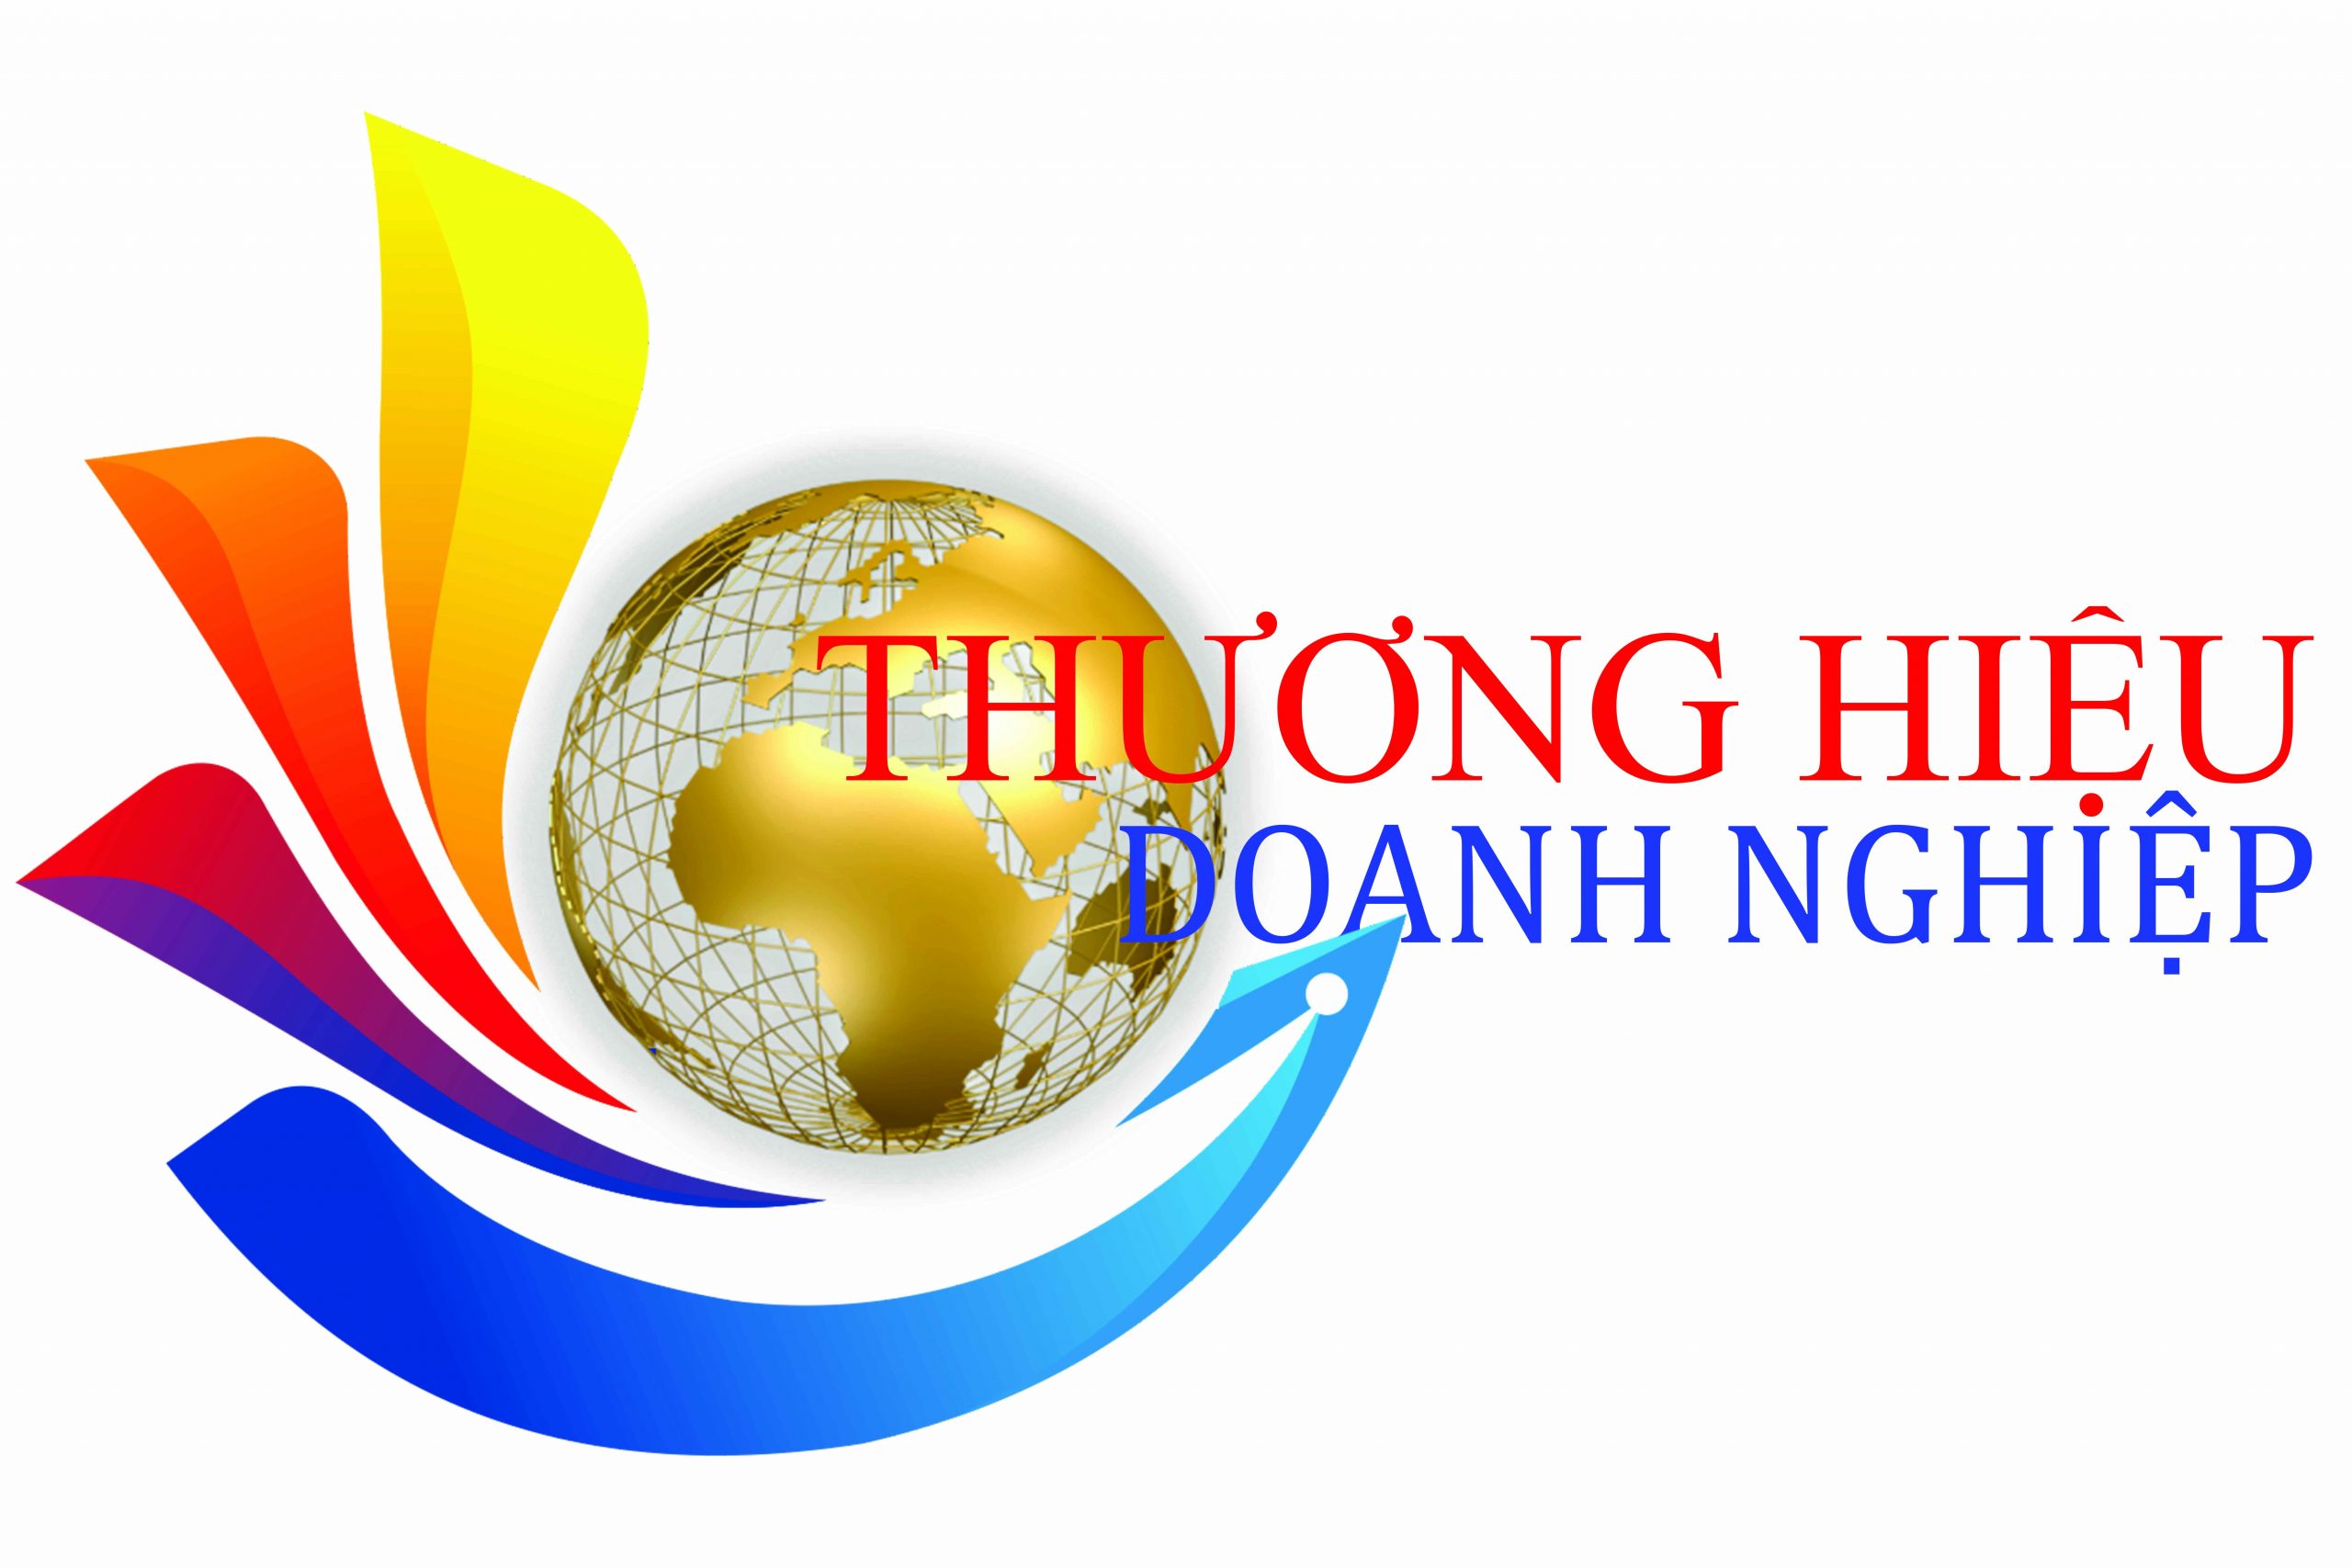 LOGO THUONG HIEU DOANH NGHIEP 51